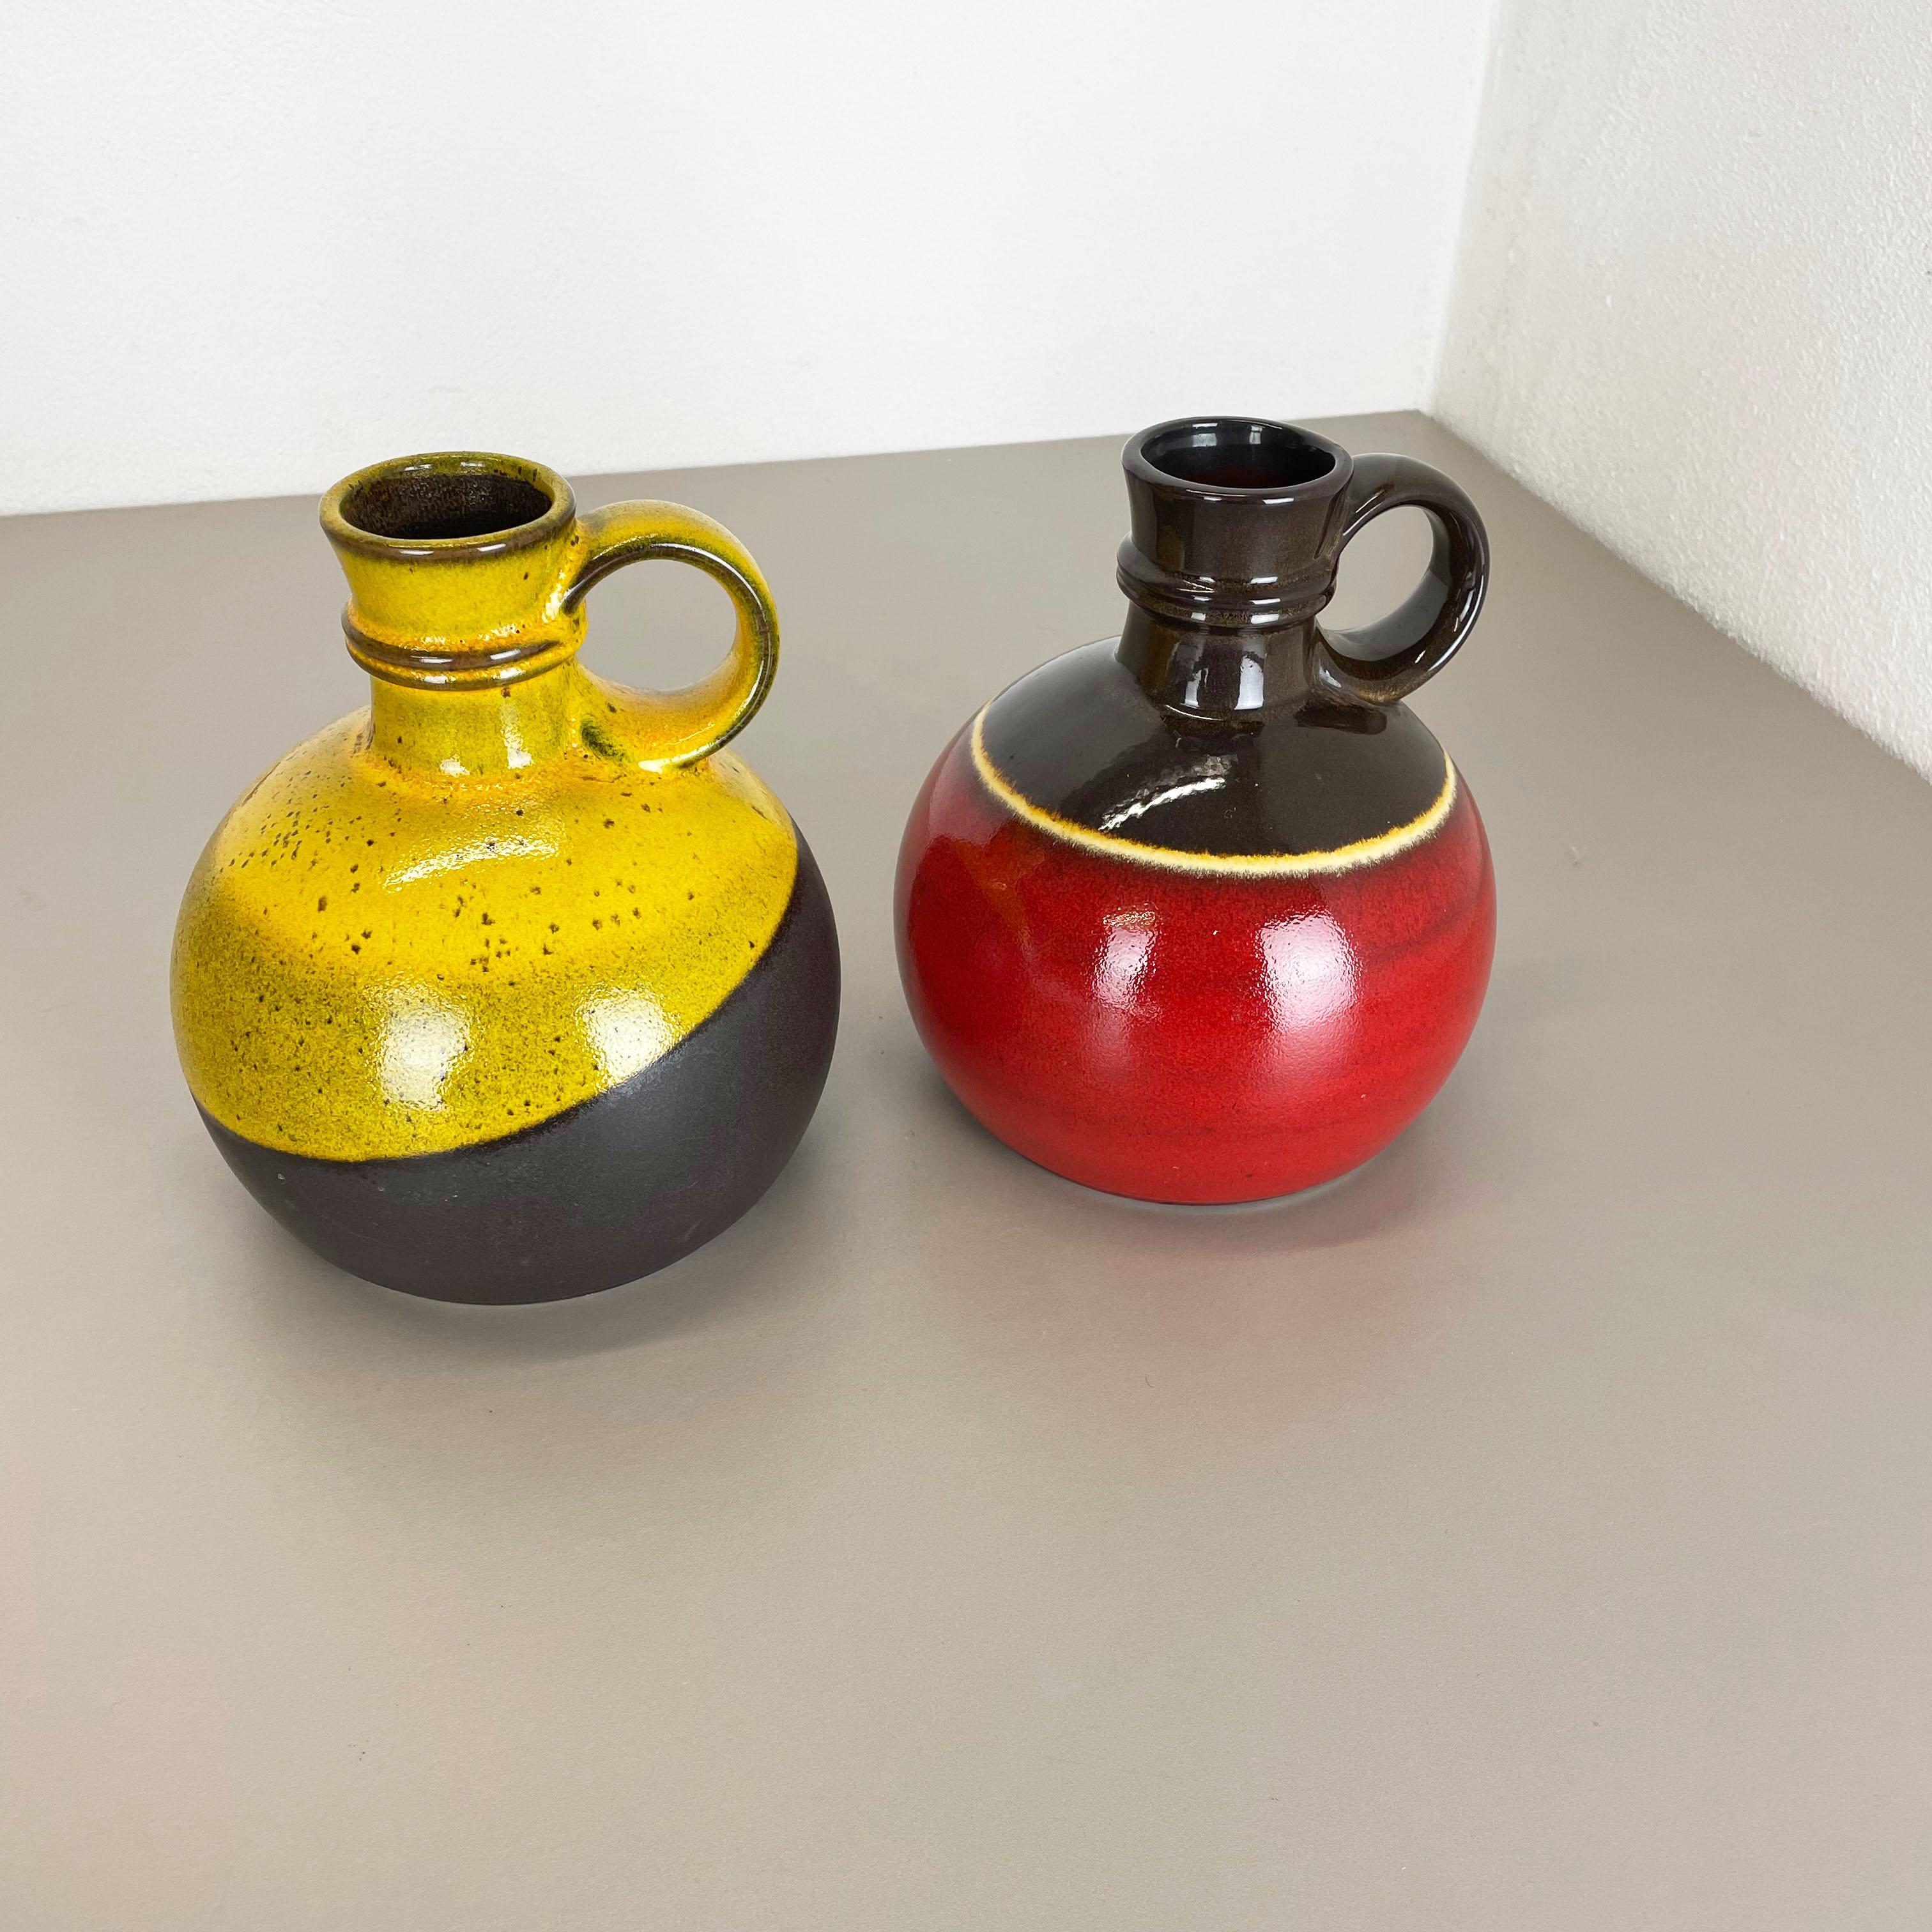 Artikel:

Zweiteiliges Set aus zwei Keramikvasenelementen


Produzent:

Steuler, Deutschland



Jahrzehnt:

1970er


Beschreibung:

Diese originale Vintage-Vase wurde in den 1970er Jahren in Deutschland hergestellt. Es ist aus